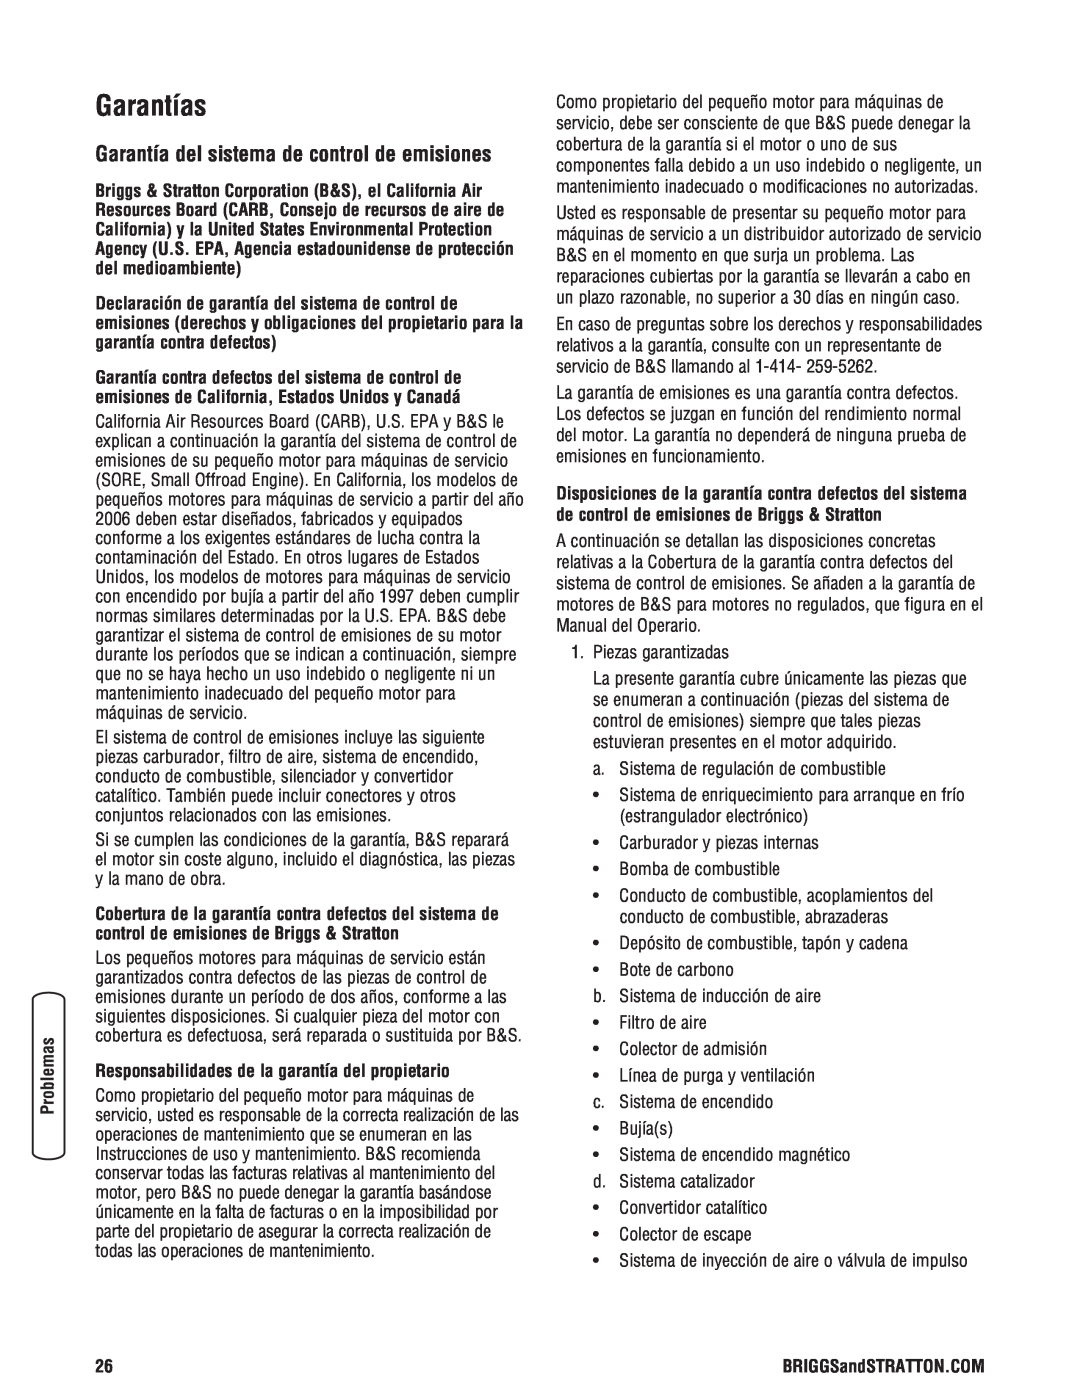 Briggs & Stratton 020364-0 manual Garantías, Garantía del sistema de control de emisiones 